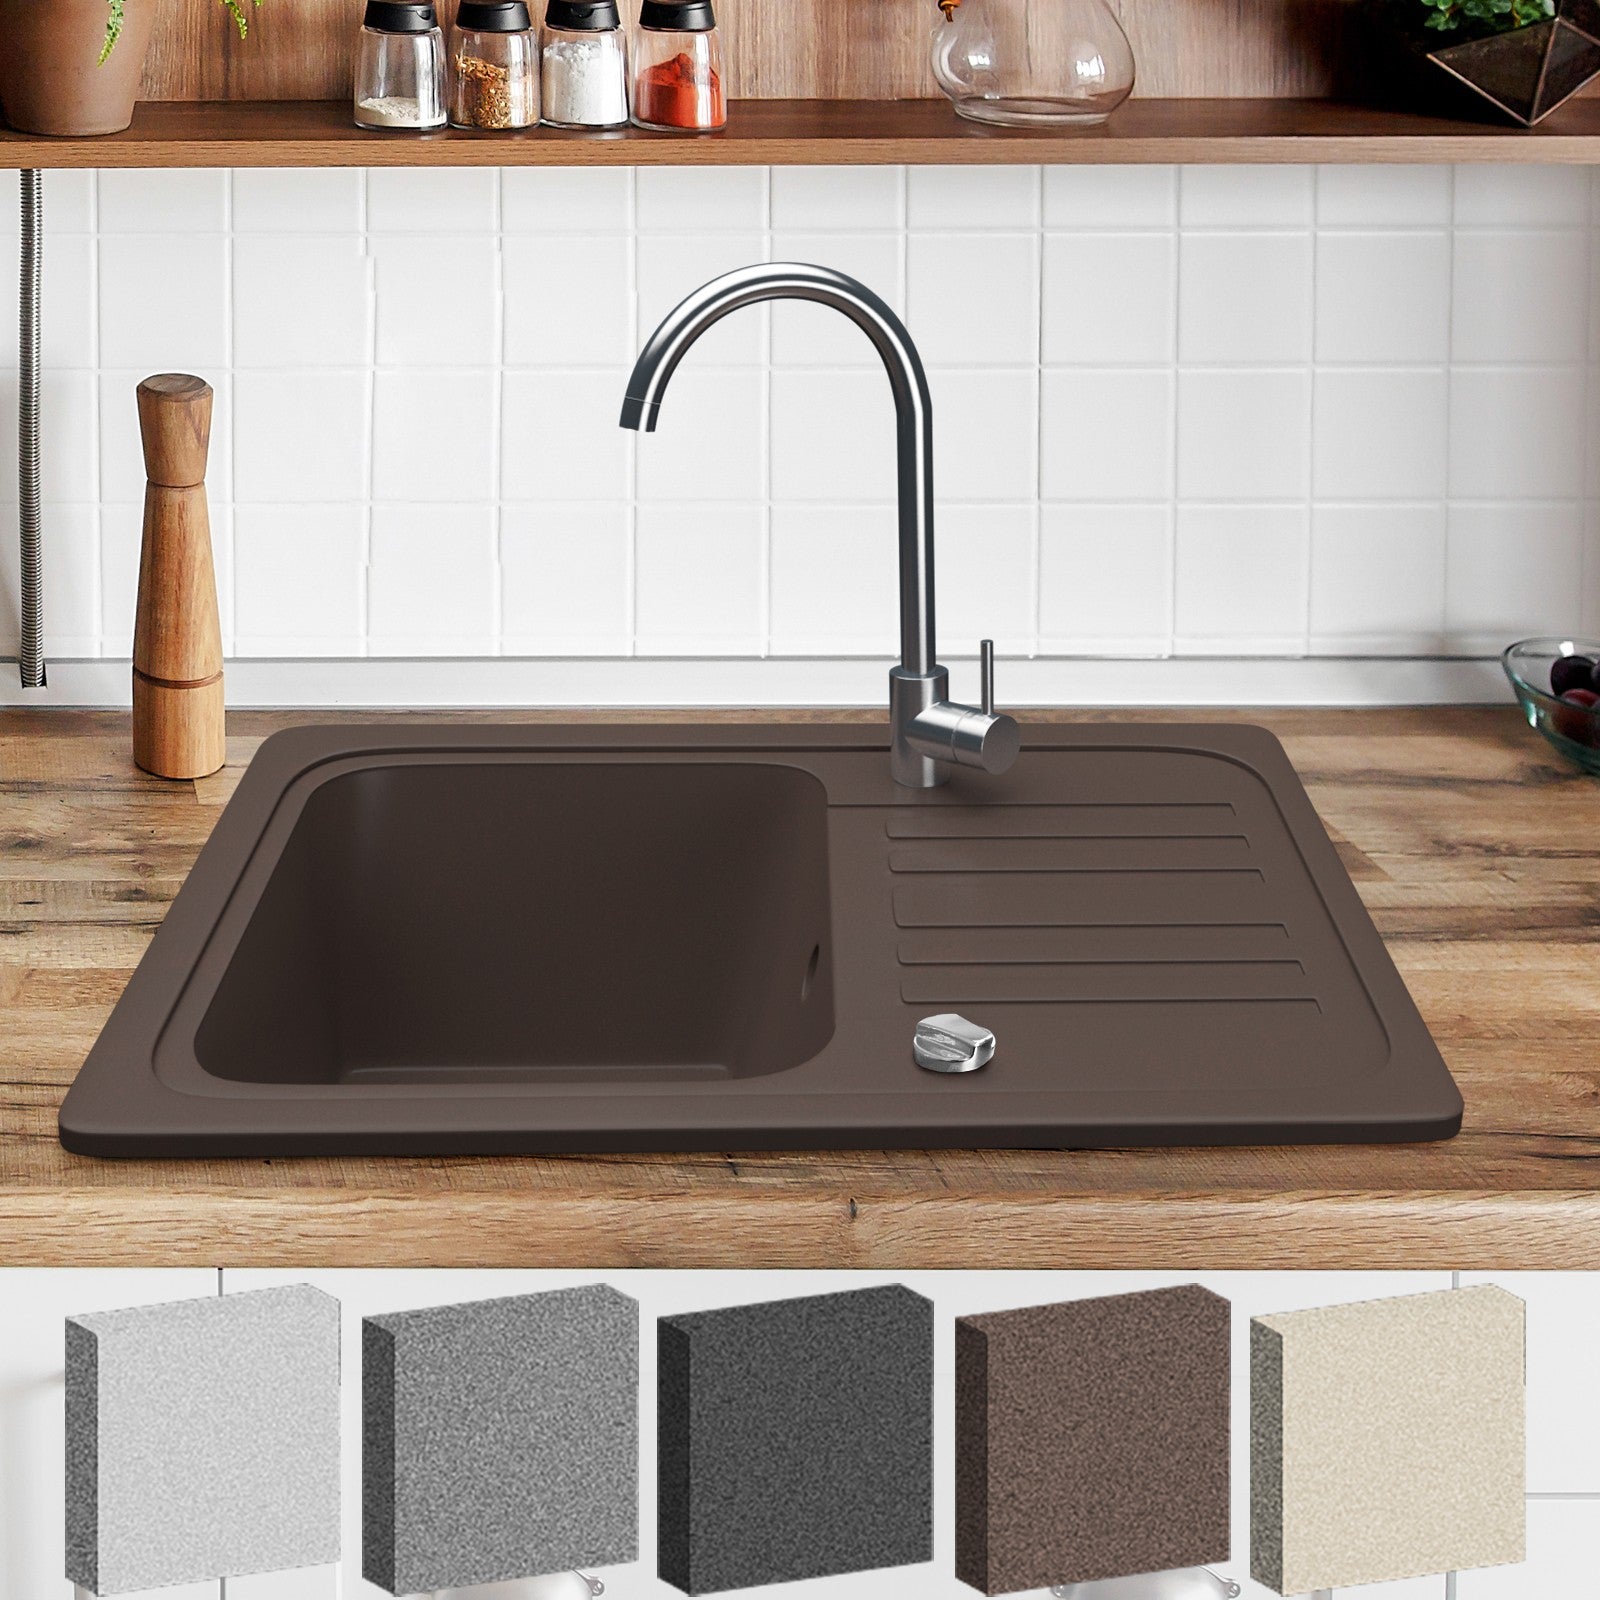 Køkkenvask i granitsæt m/ afløb, armatur i rustfrit stål, vendbar aftrækker, rektangel, brun